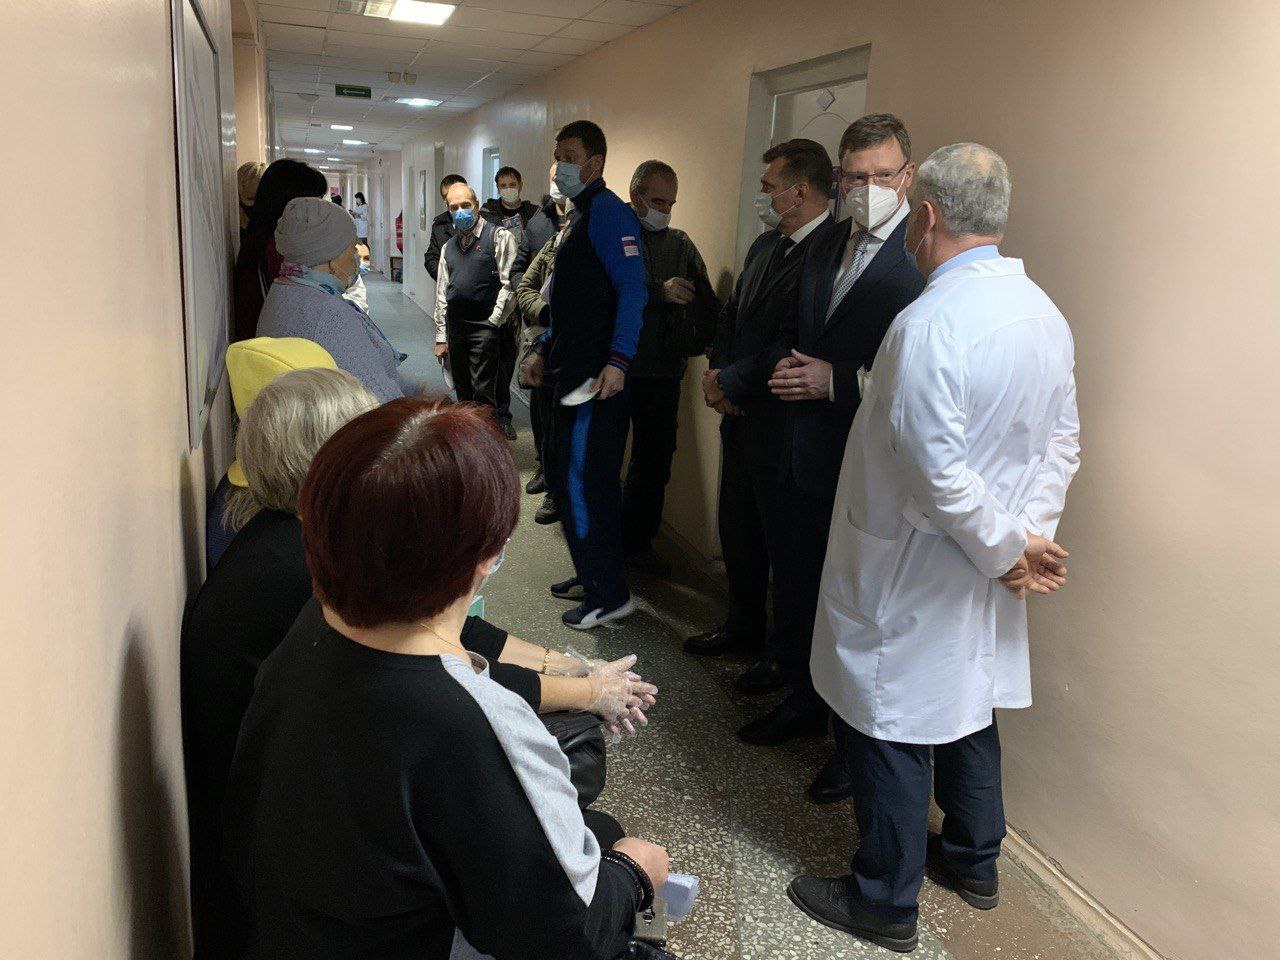 Бурков своими глазами увидел большую очередь в омской поликлинике #Омск #Общество #Сегодня